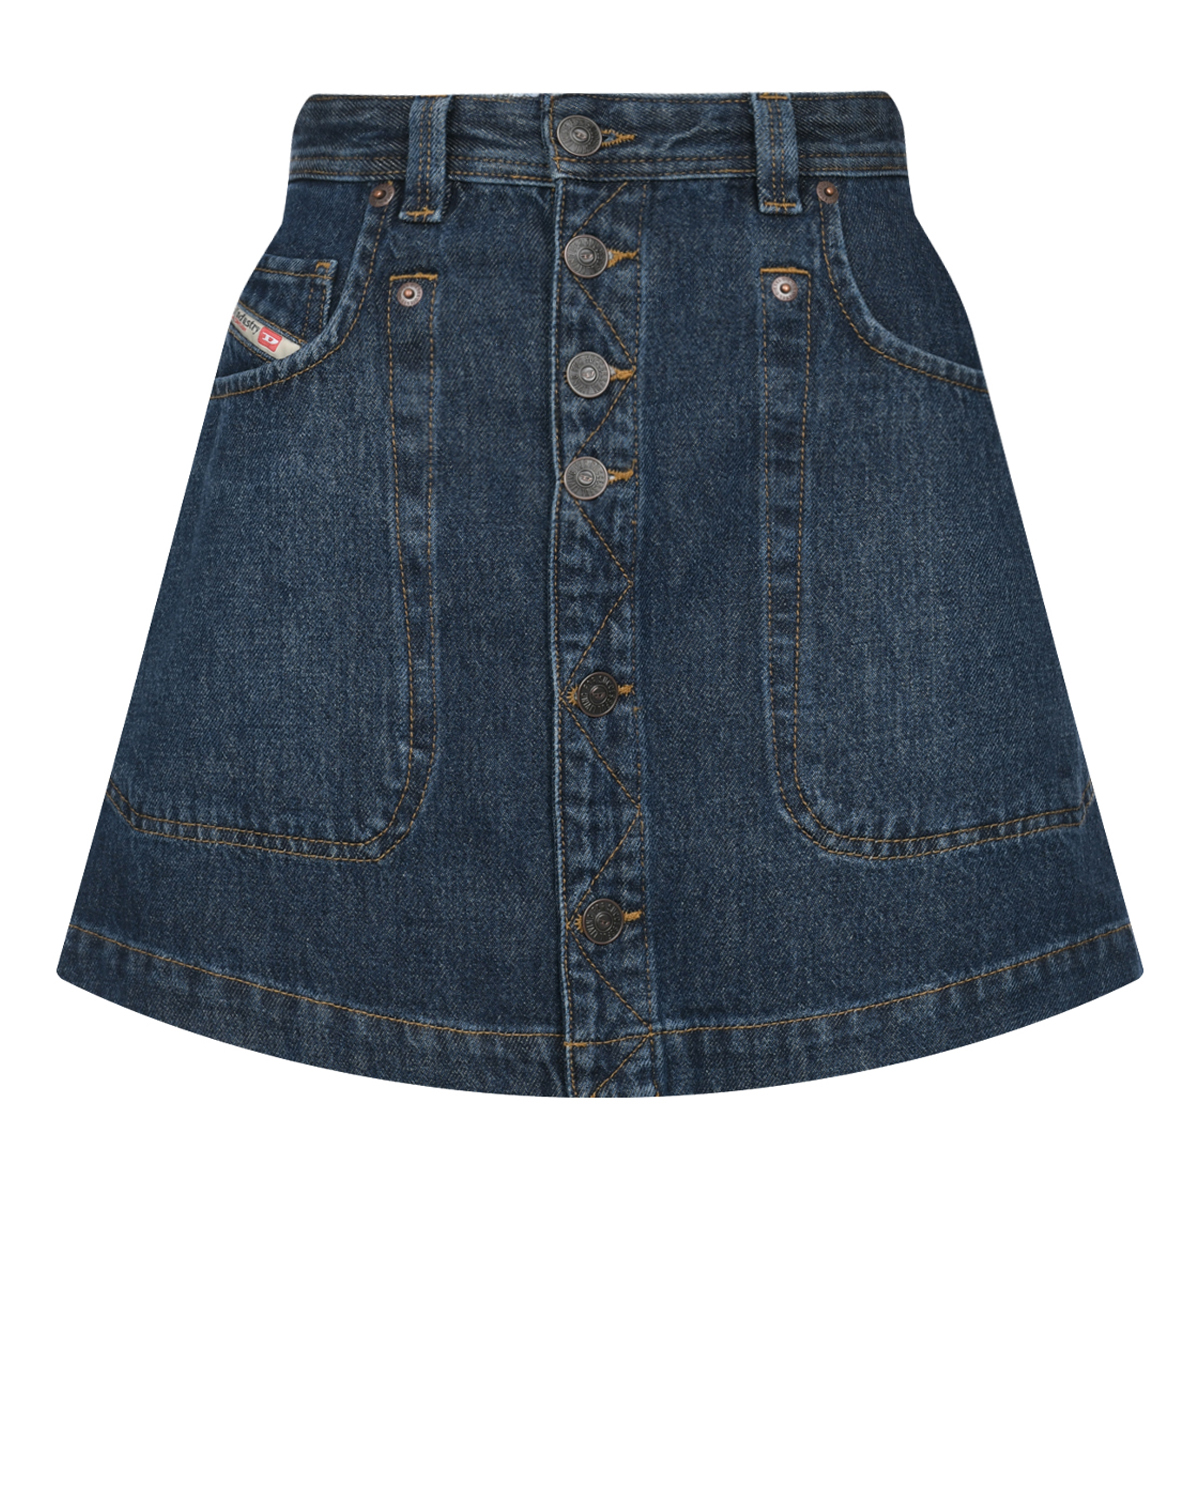 Синяя джинсовая юбка Diesel синяя юбка мини в складку с принтом в клетку для девочки gsk017549 14 164